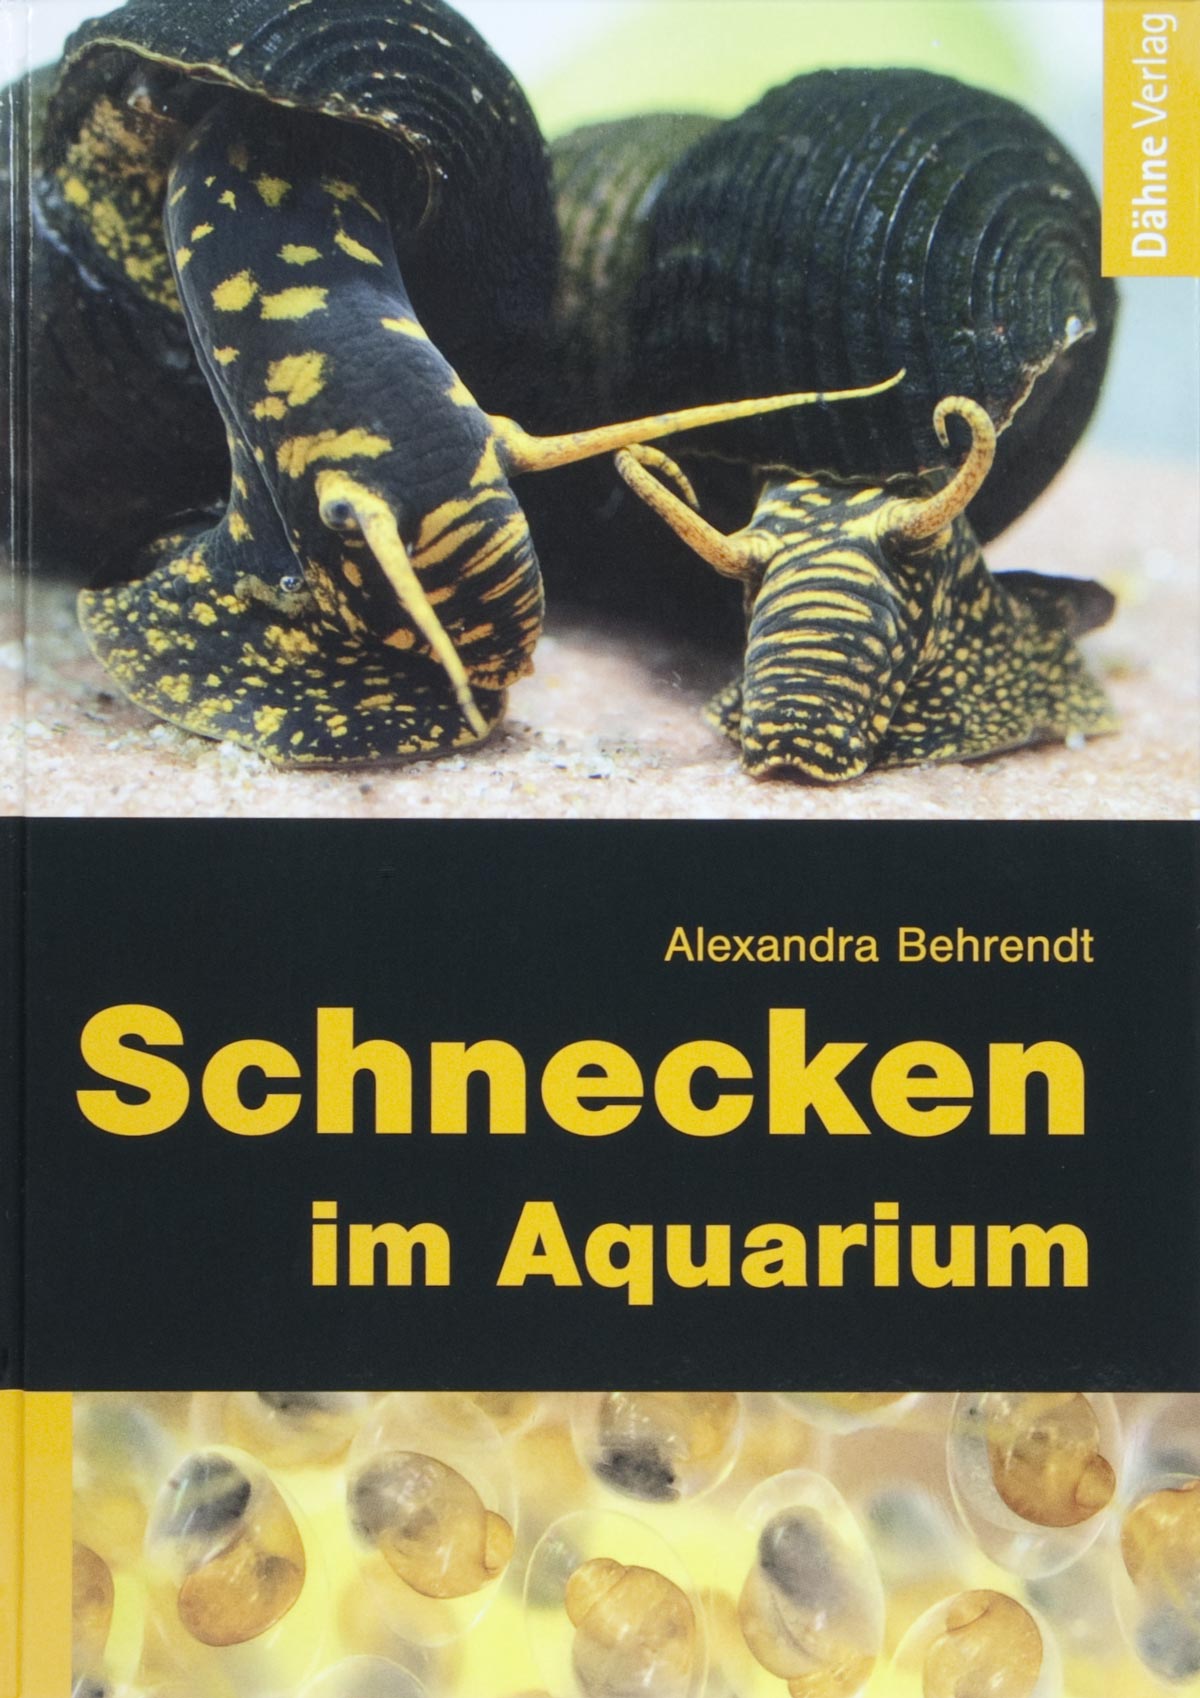 Schnecken im Aquarium / Alexandra Behrendt